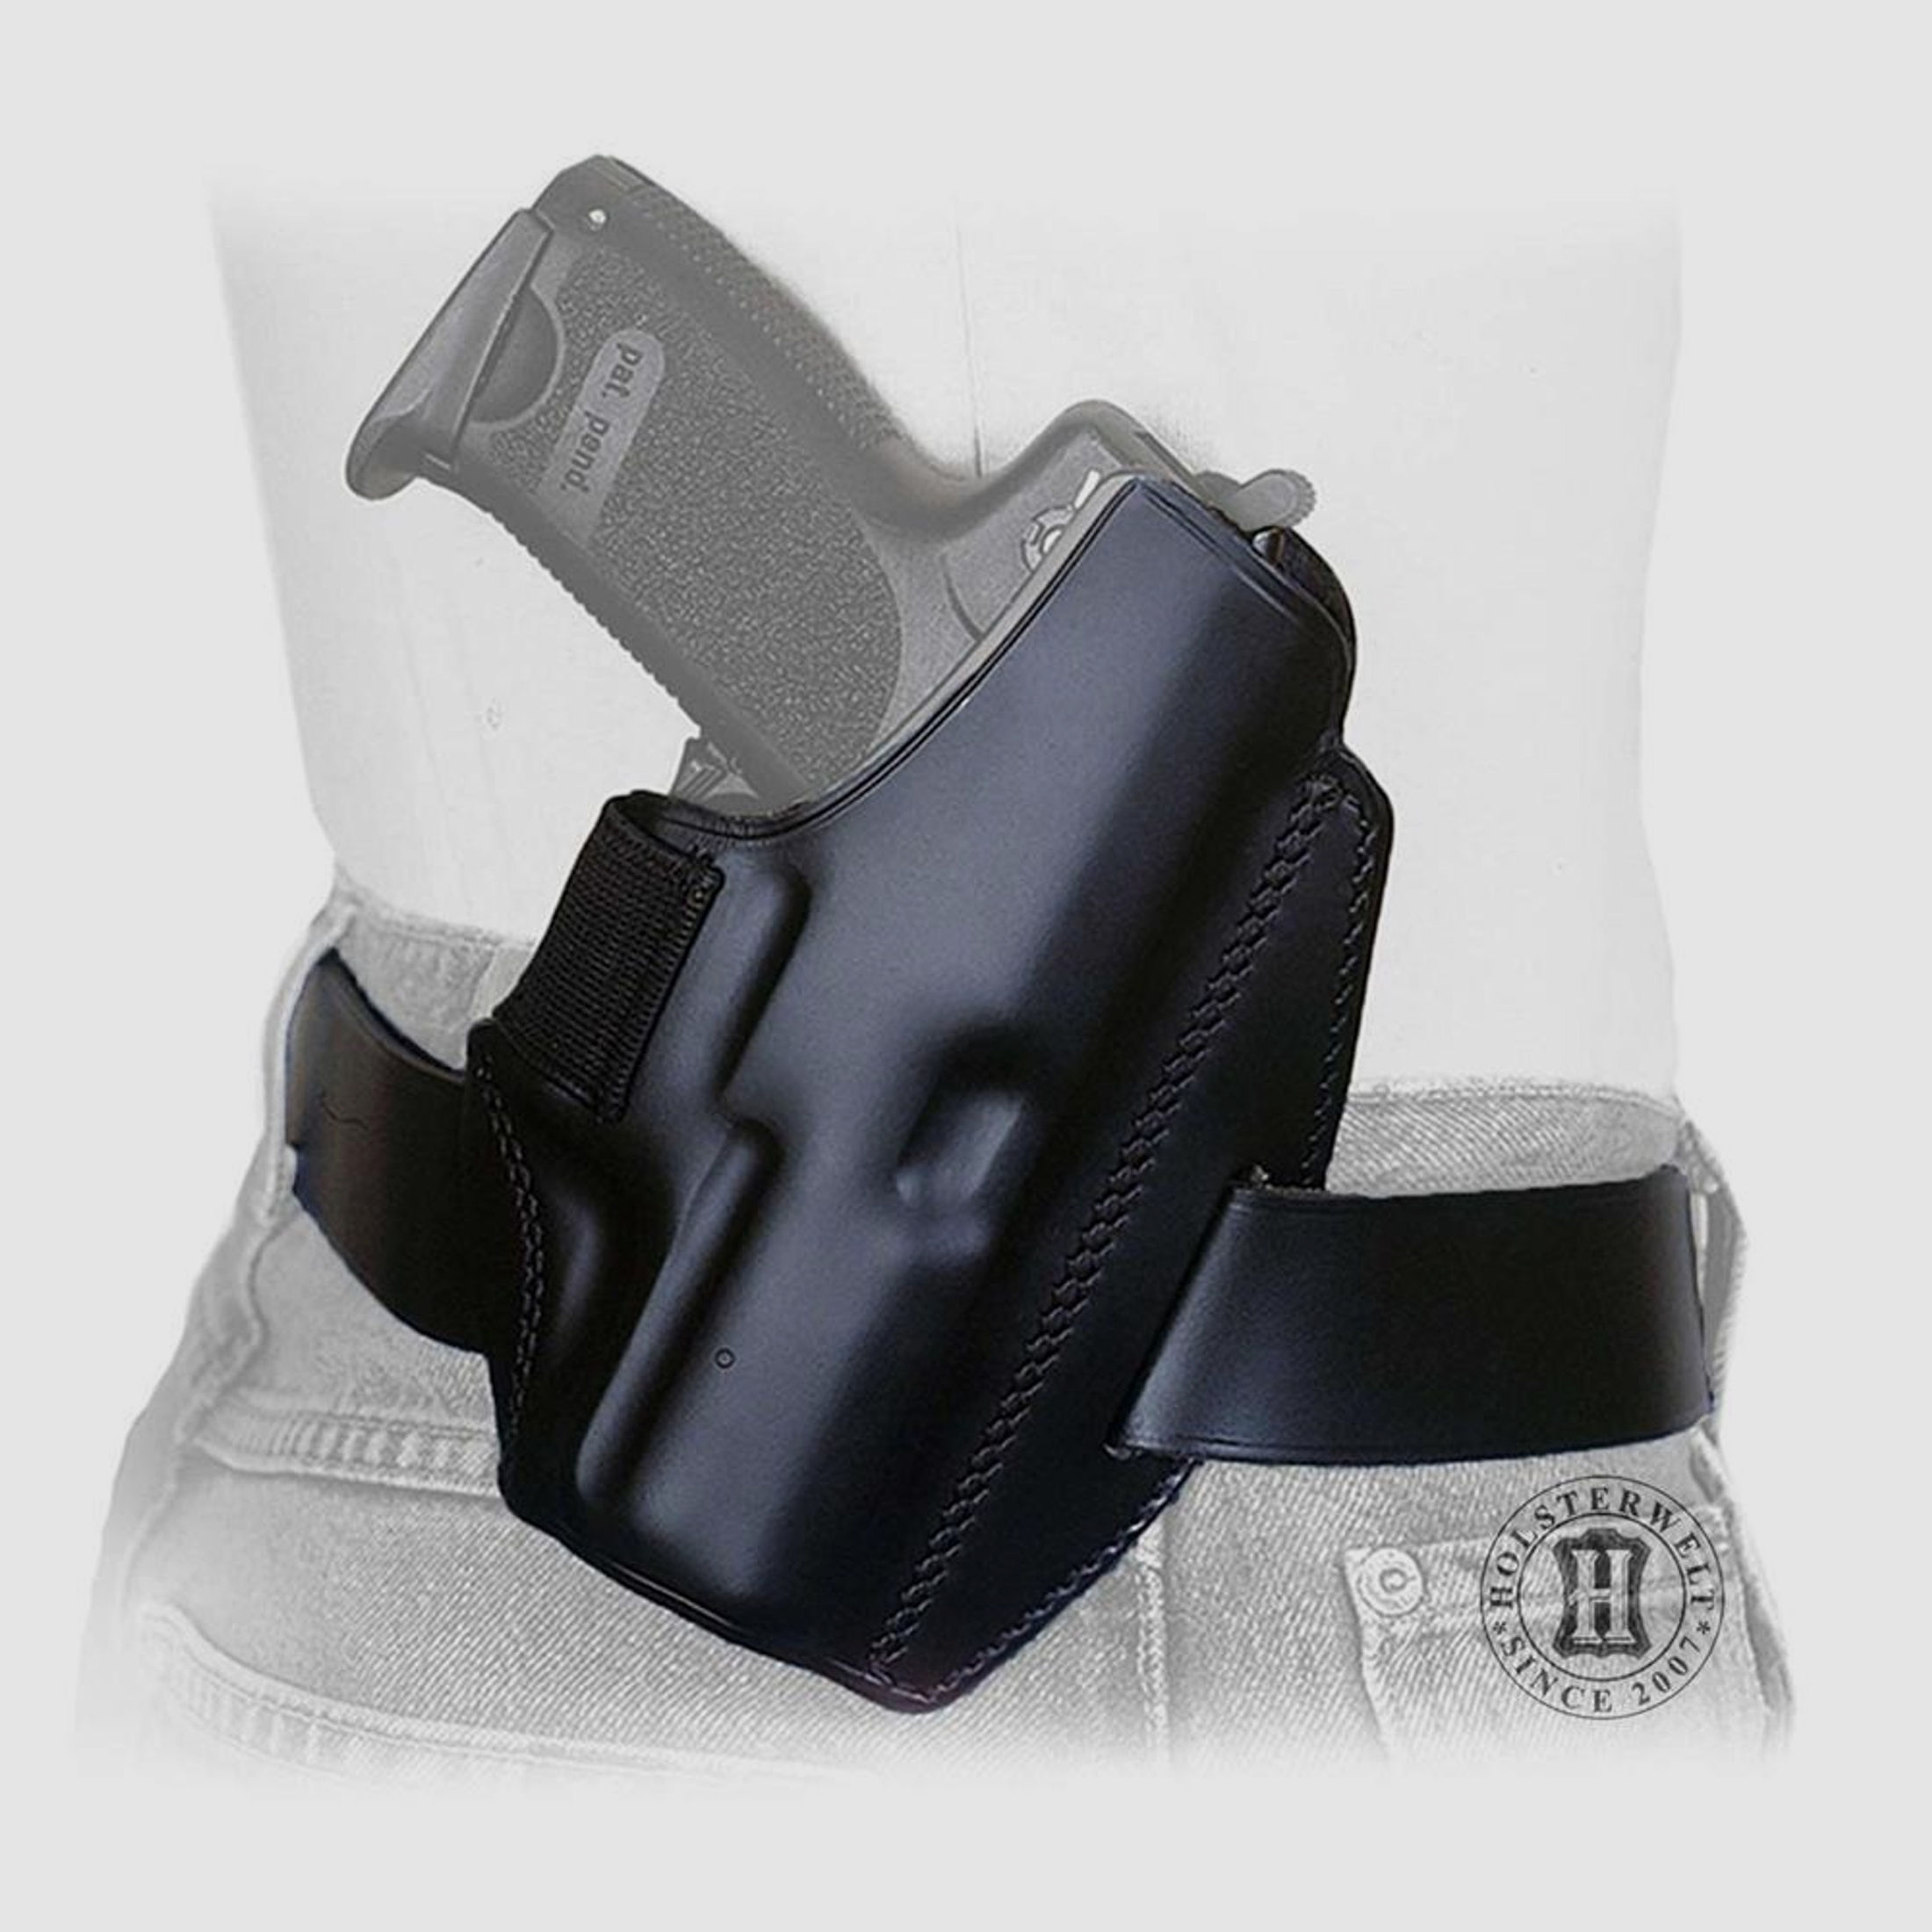 Gürtelholster QUICK DEFENSE Walther P5, Vektor CP 1 Linkshänder